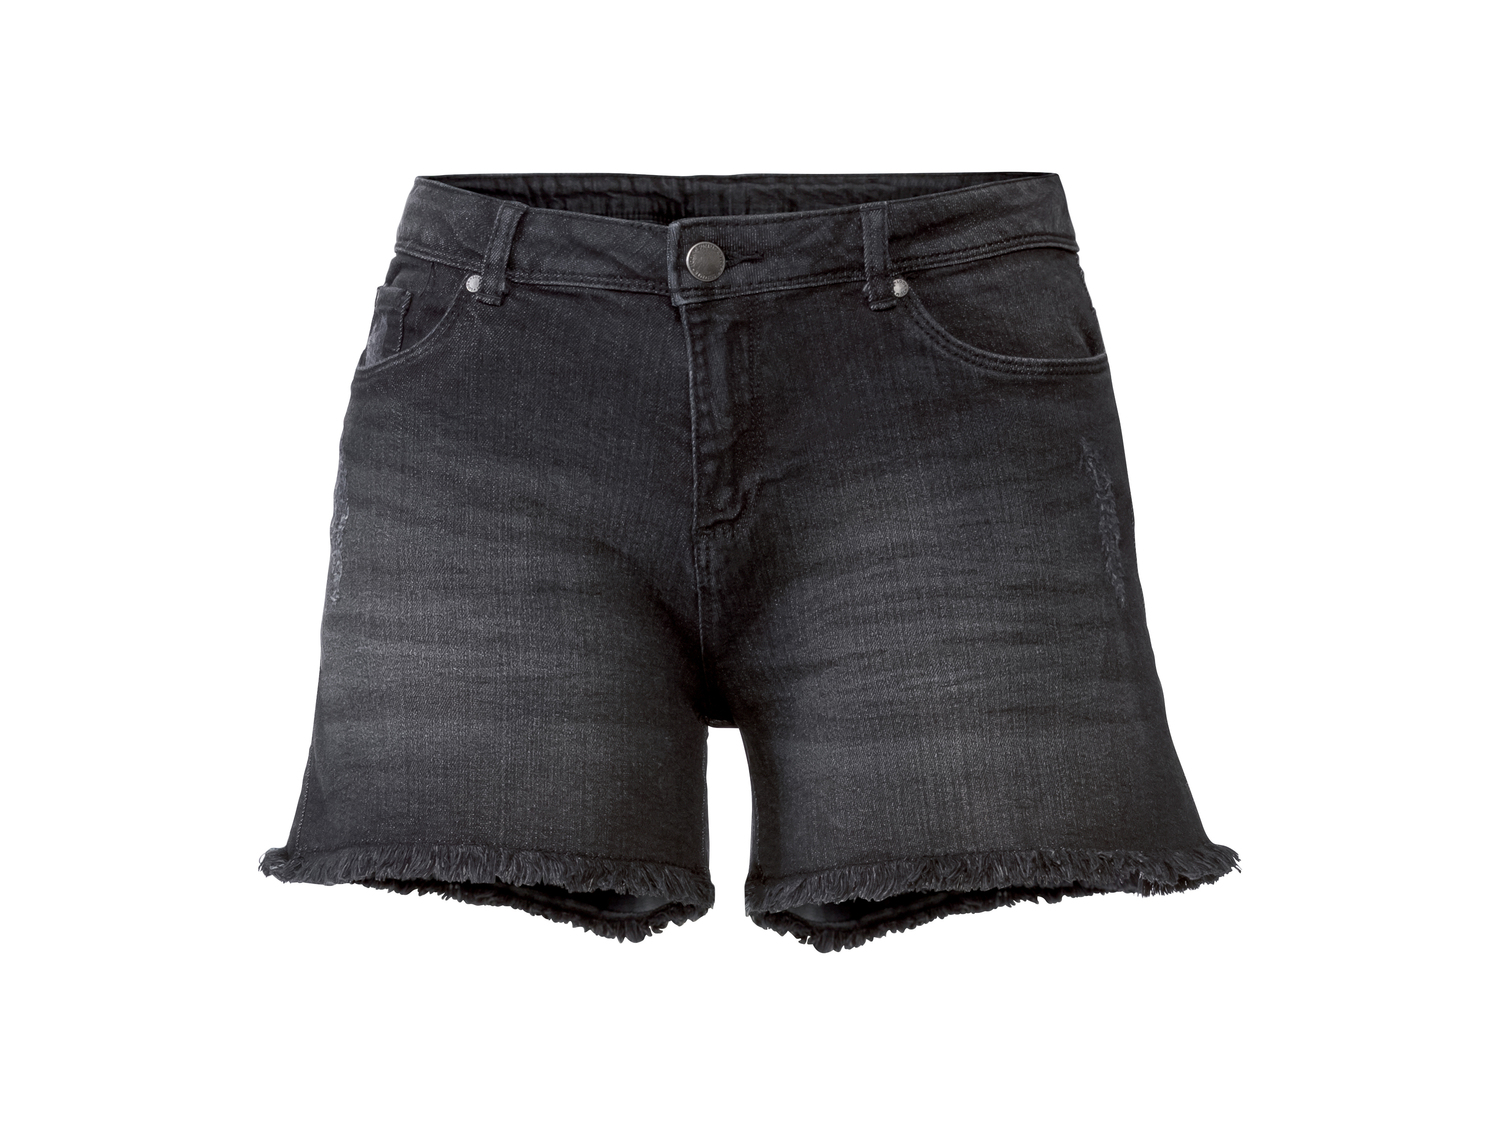 Shorts in jeans da donna Esmara, prezzo 6.99 &#8364; 
Misure: 38-48
Taglie disponibili

Caratteristiche

- ...